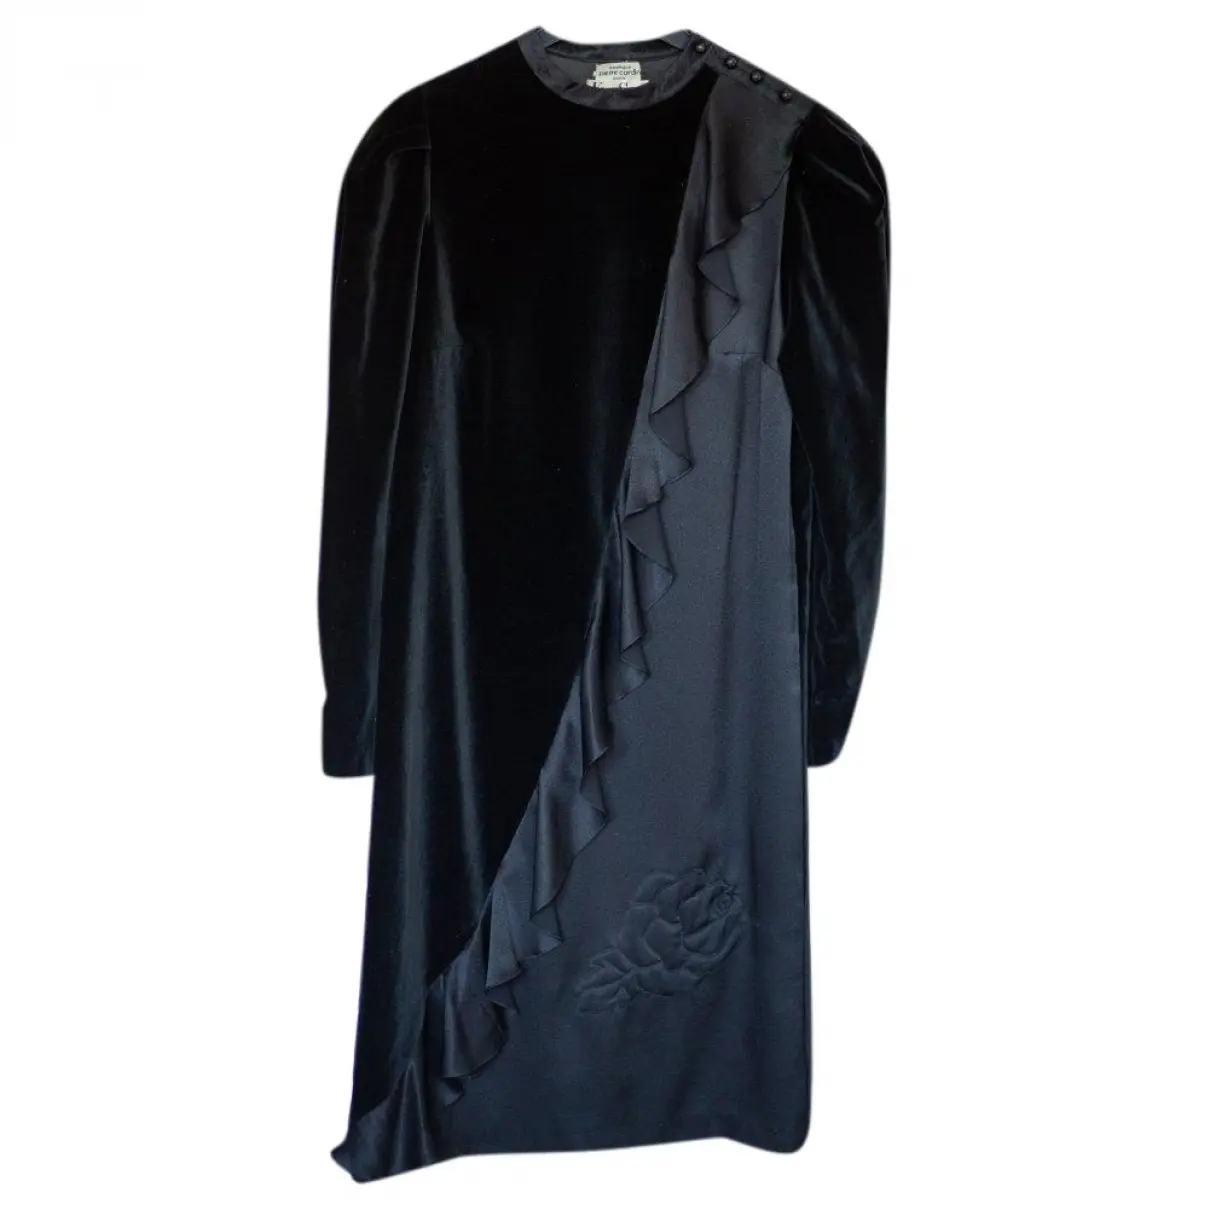 Velvet mid-length dress Pierre Cardin - Vintage